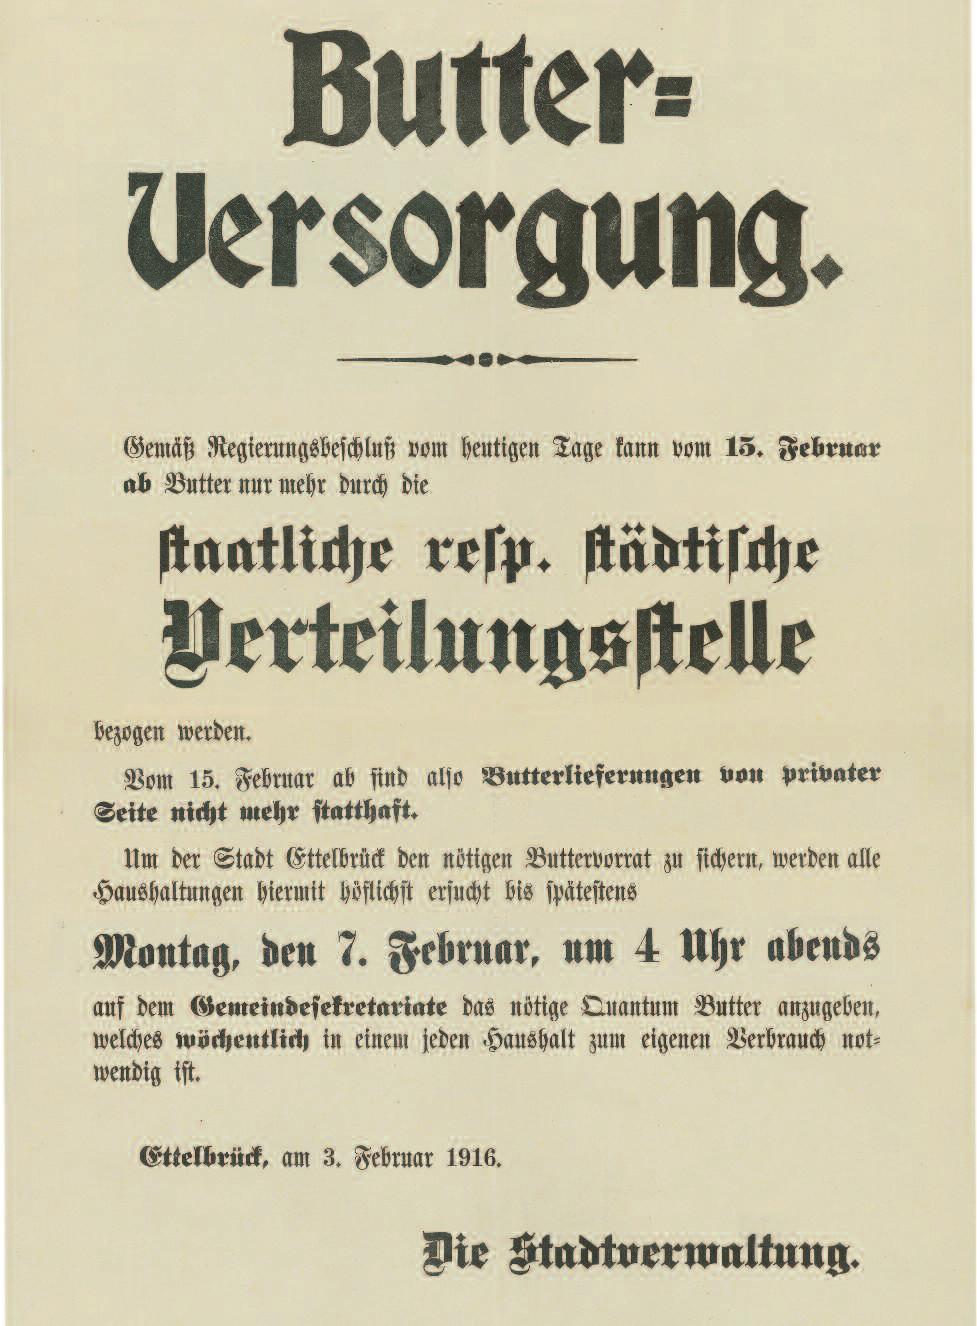 Ettelbrück im 1. Weltkrieg (5. Teil) Ettelbrück im I. Weltkrieg (4. Teil) Die Butterversorgung Der Butterpreis war schon immer saisonalen Schwankungen unterworfen.